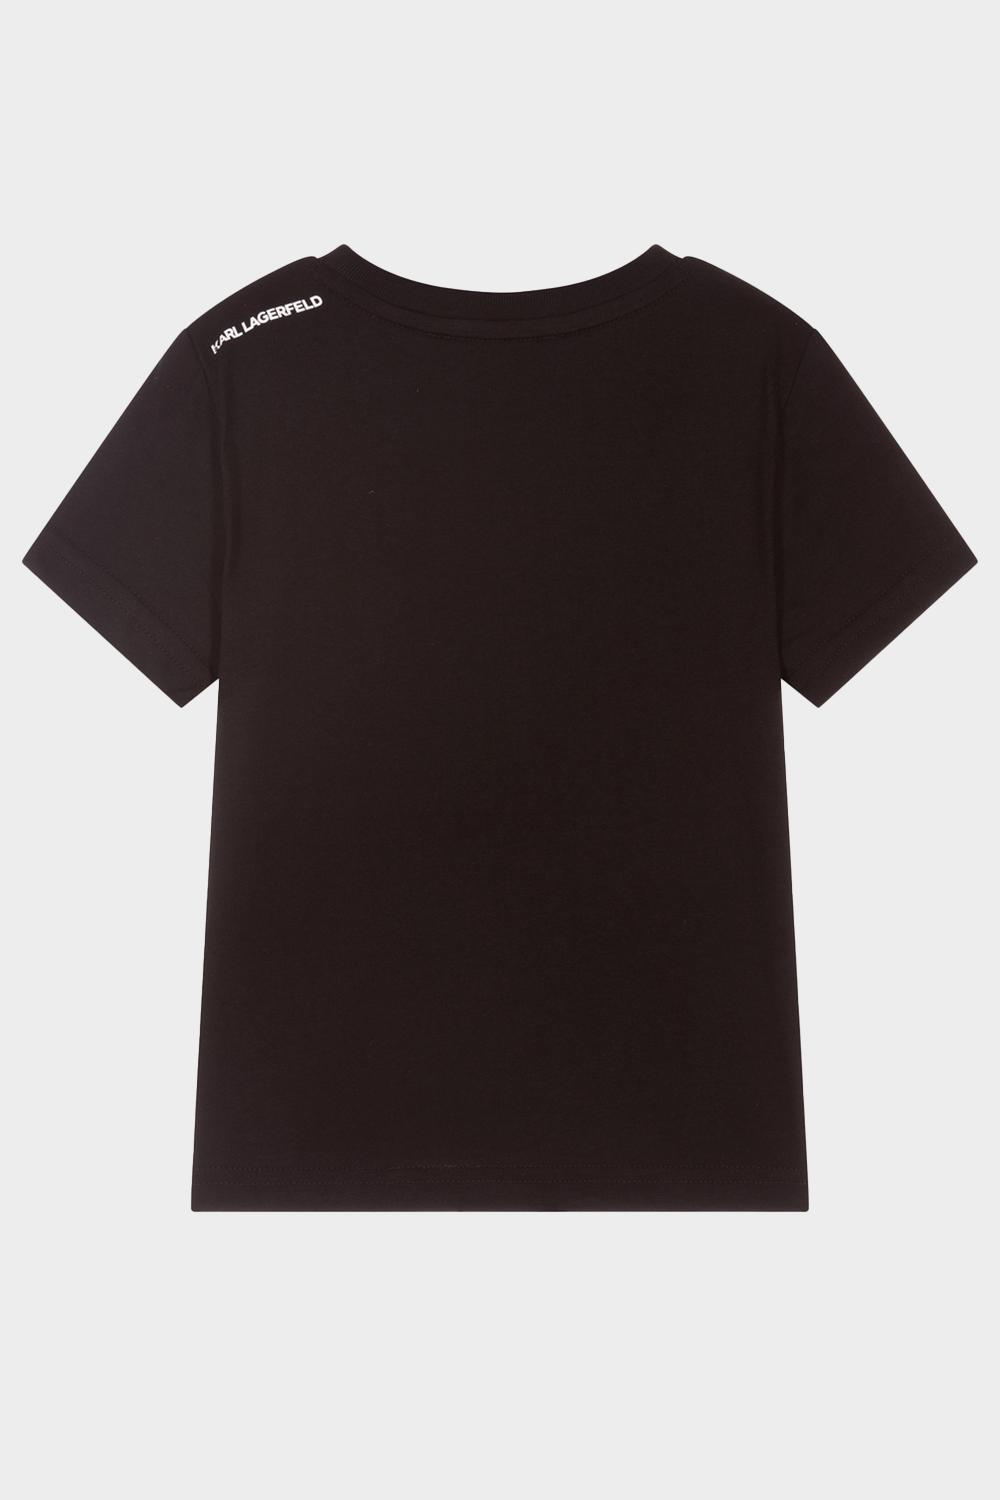 חולצת טי שירט לילדים בצבע שחור KARL LAGERFELD Vendome online | ונדום .